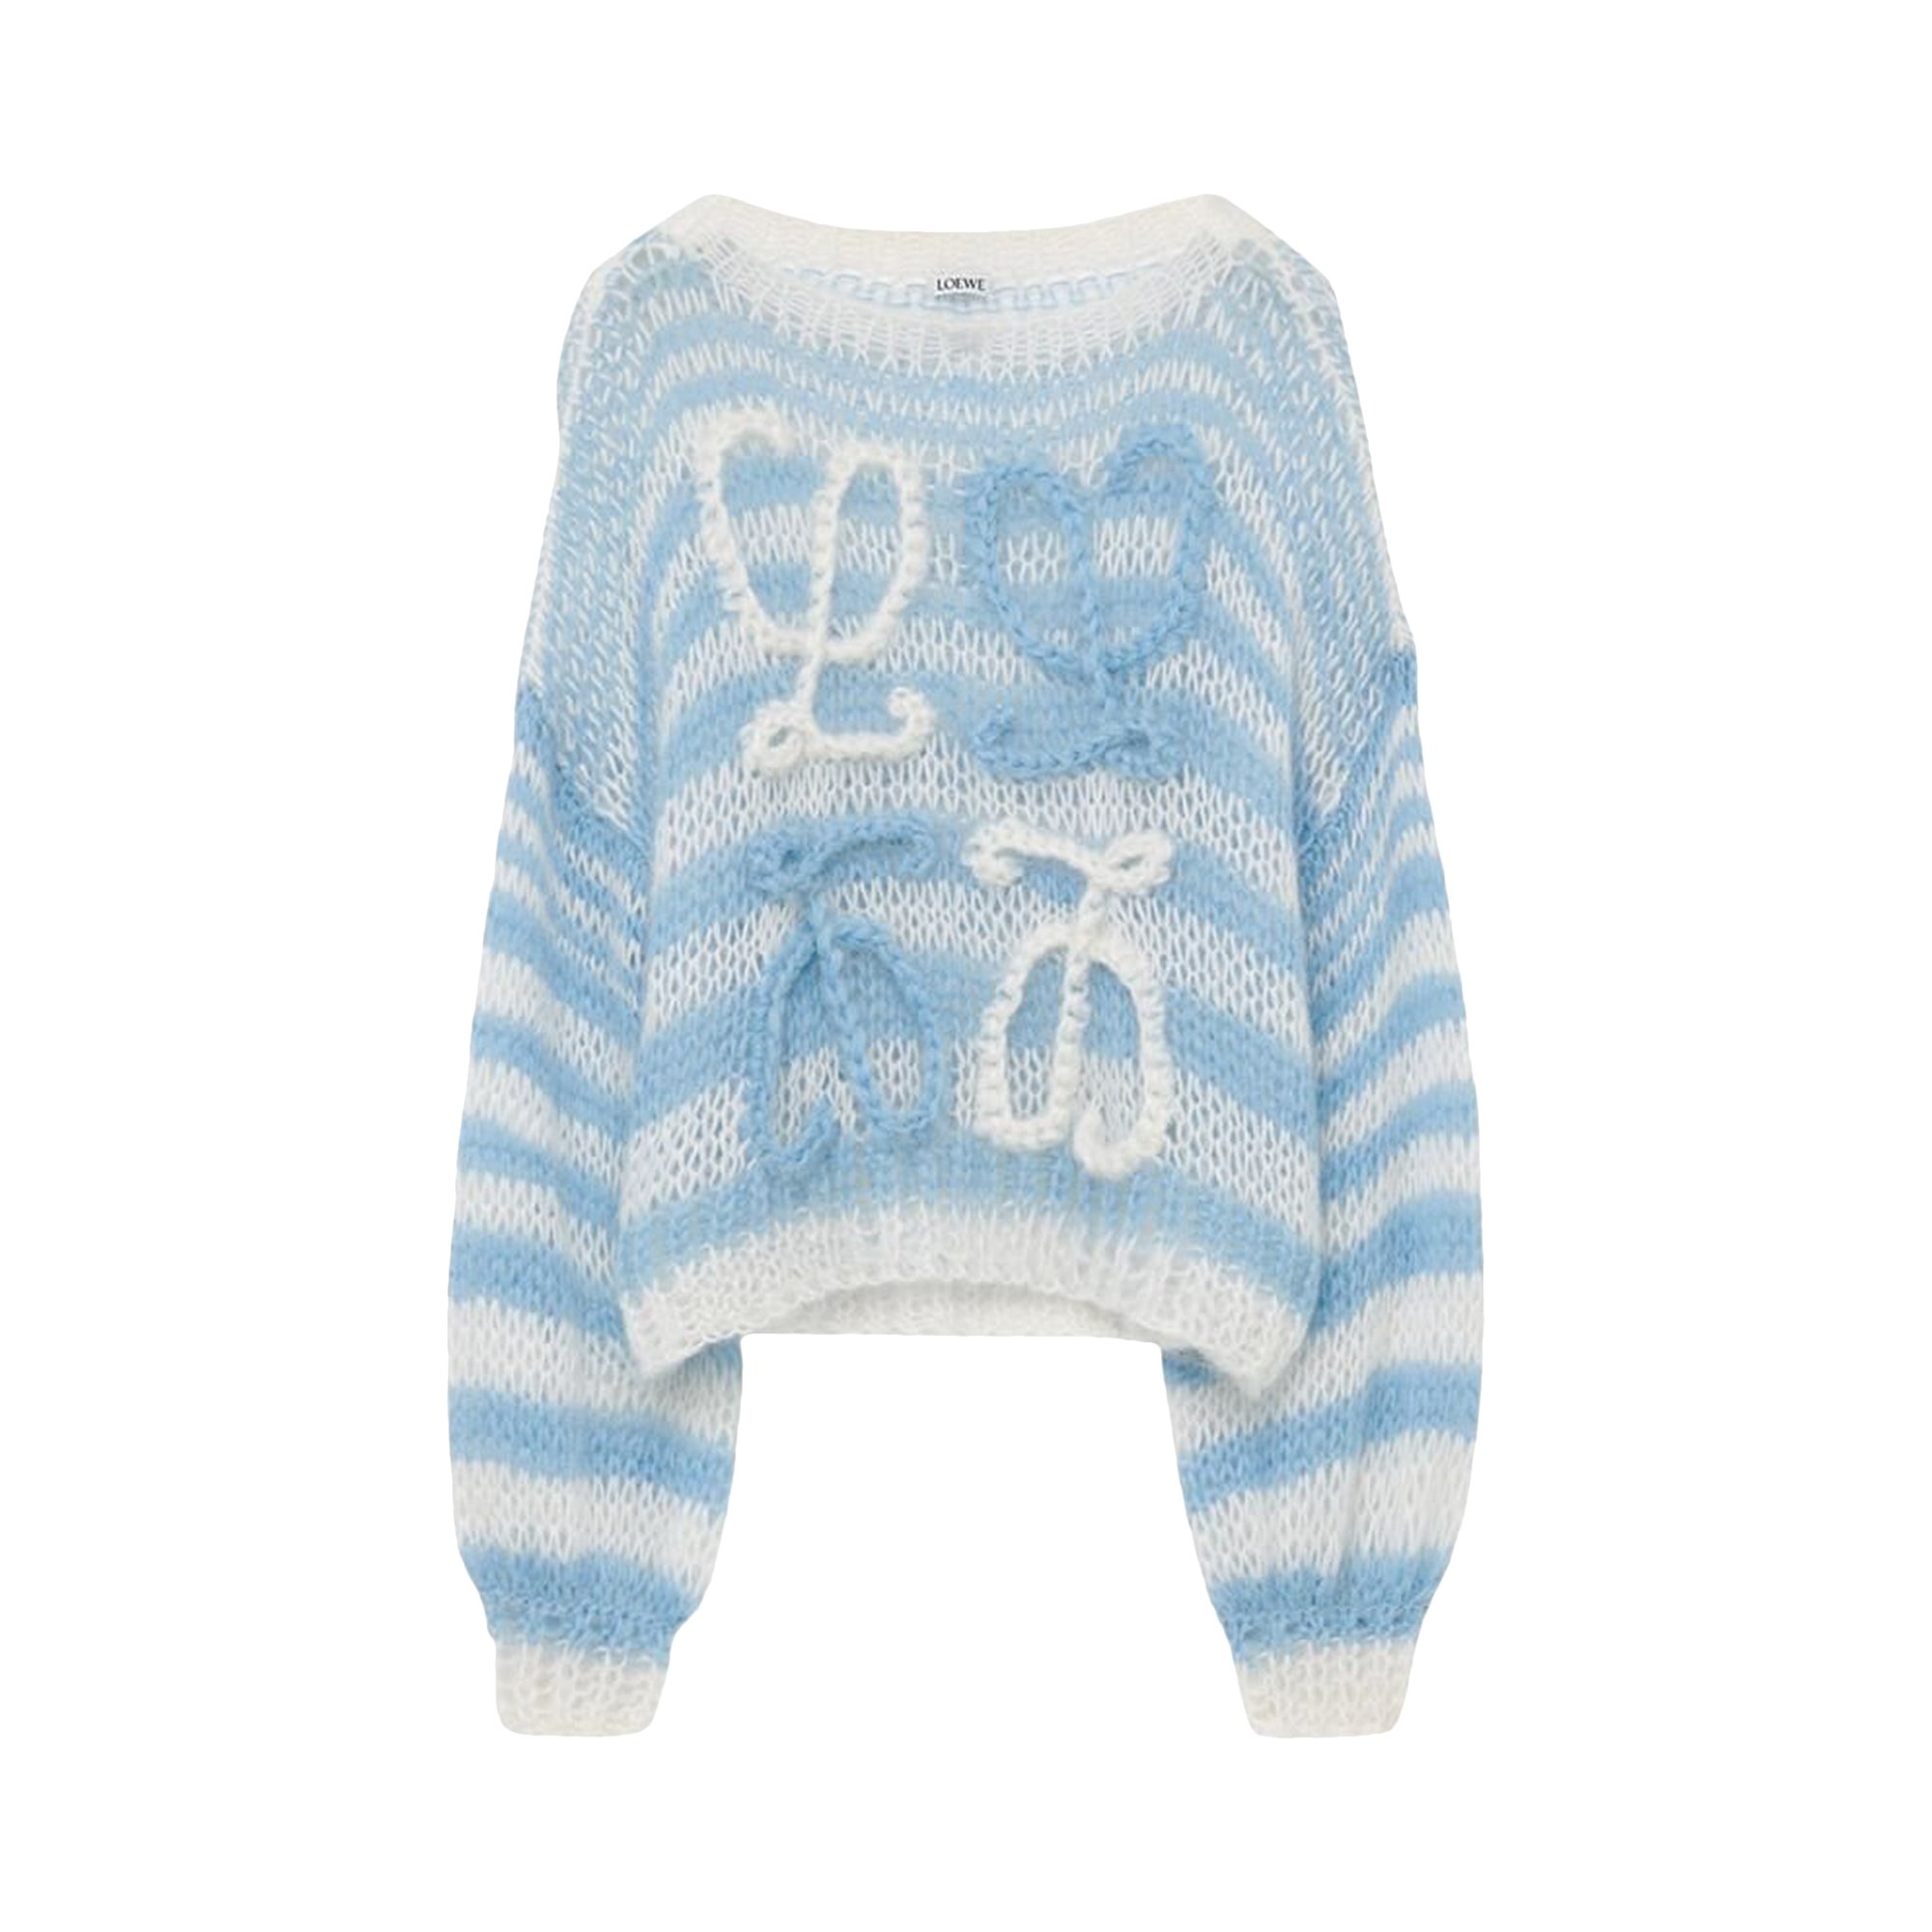 Полосатый свитер Loewe Anagram, цвет: белый/синий